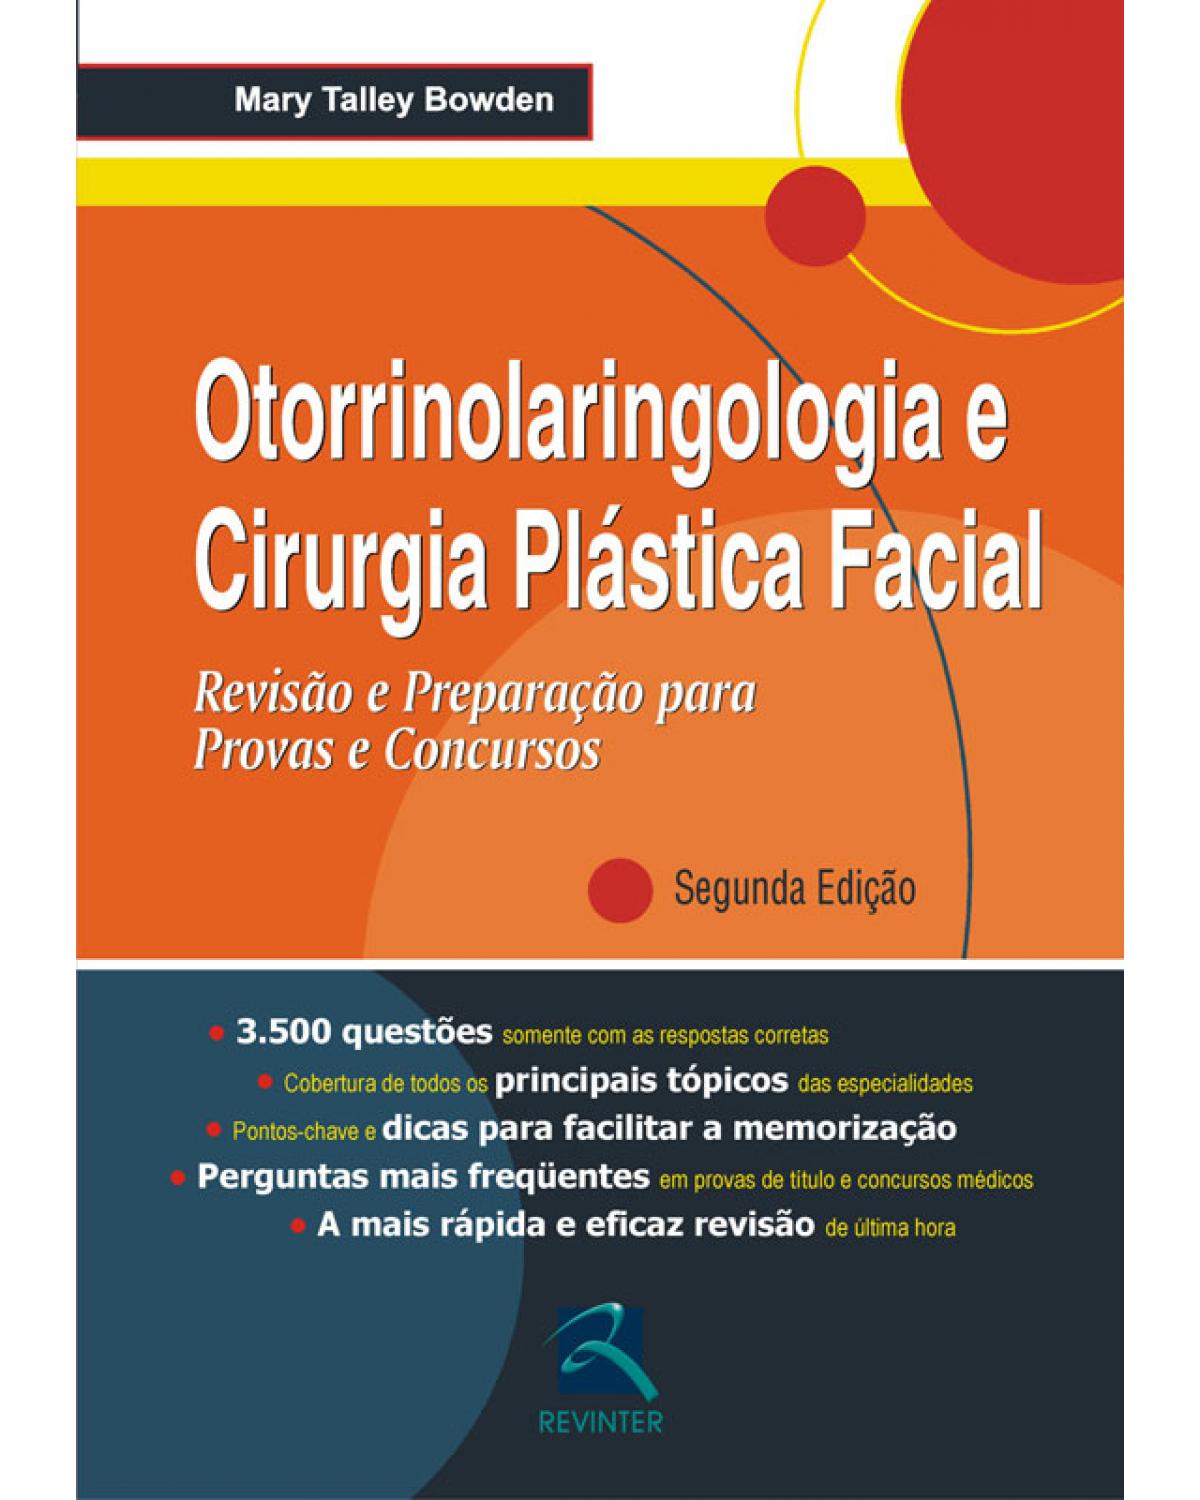 Otorrinolaringologia e cirurgia plástica facial - revisão e preparação para provas e concursos - 2ª Edição | 2009